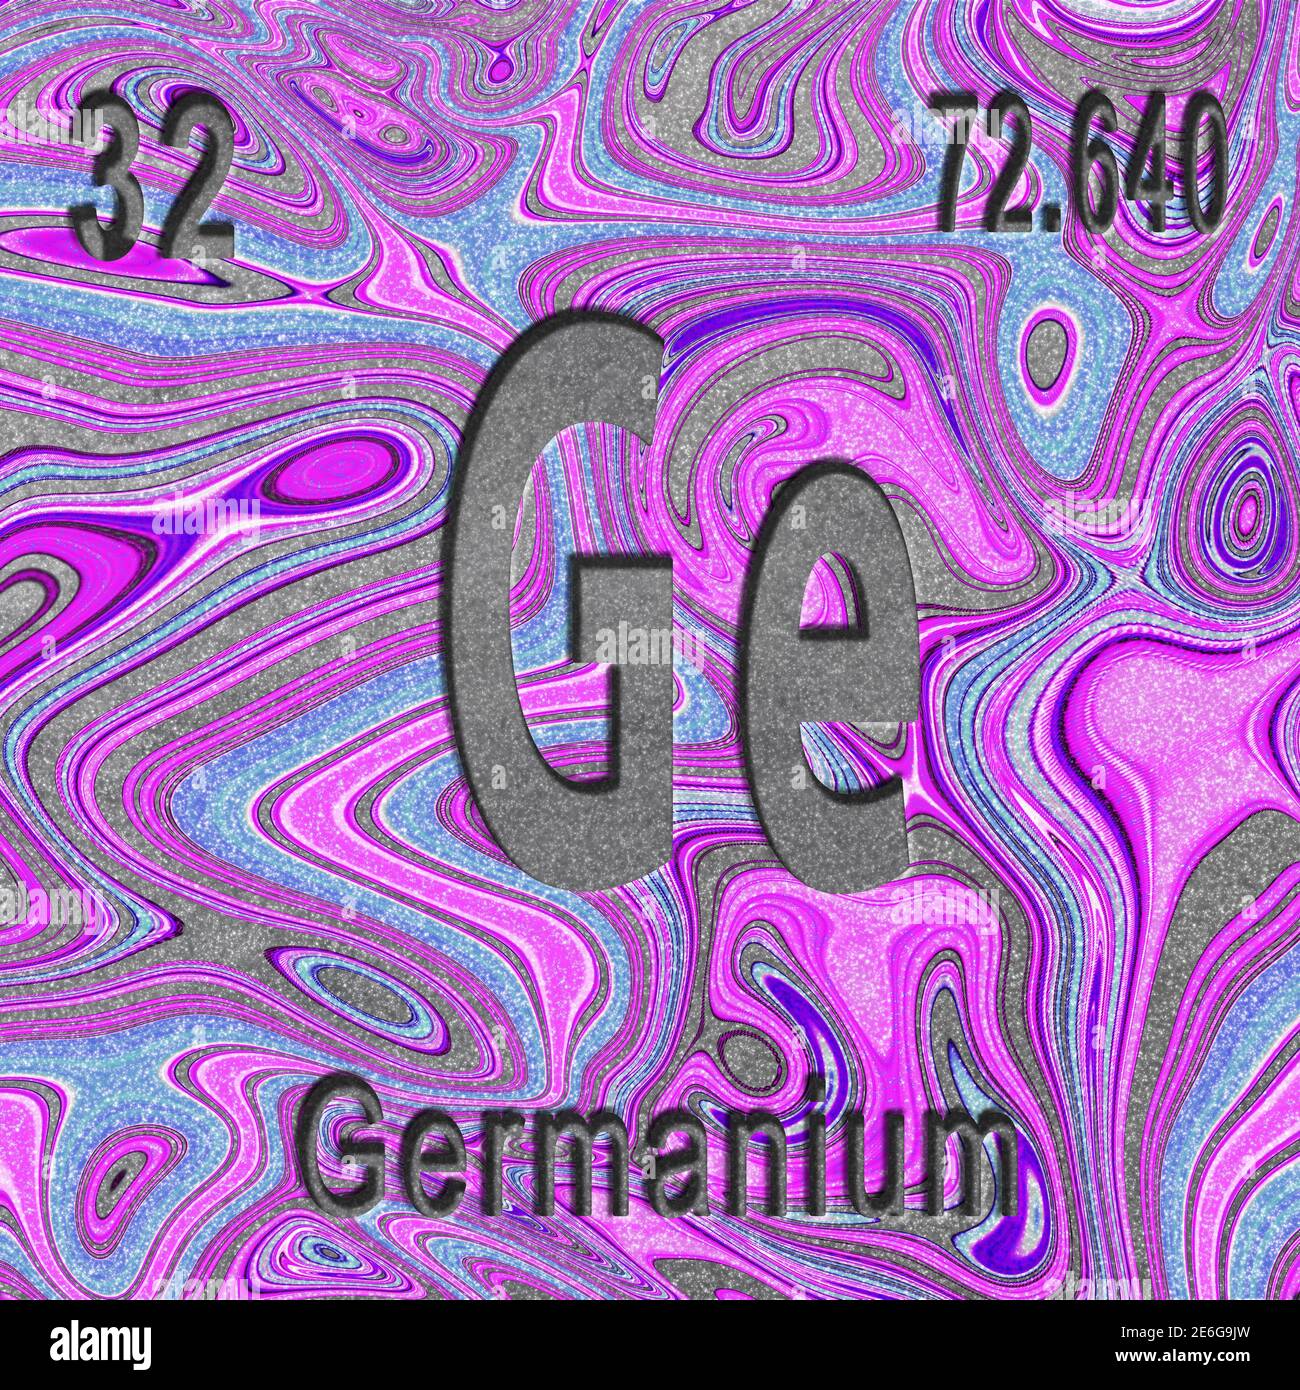 Elemento químico germanio, signo con número atómico y peso atómico, fondo púrpura, elemento de tabla periódica Foto de stock